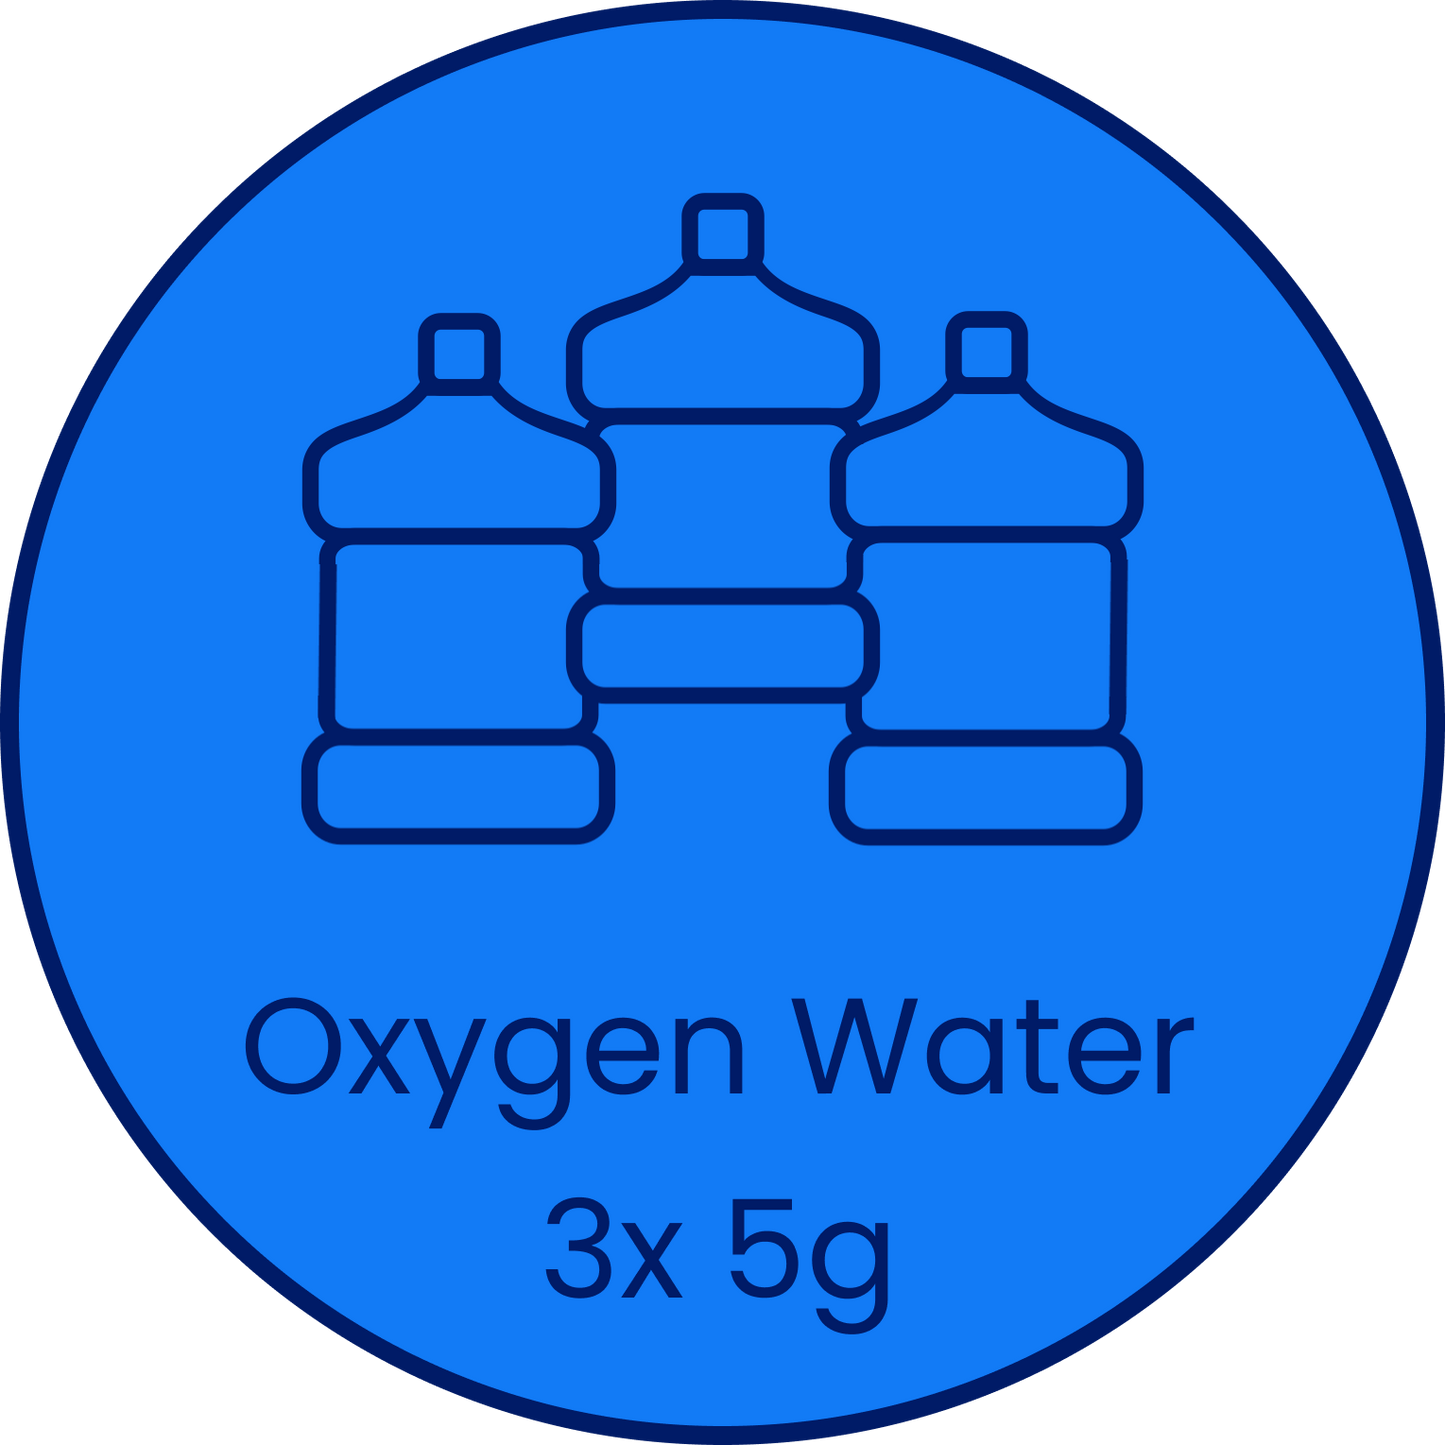 3x 5g Oxygen Water (15g)